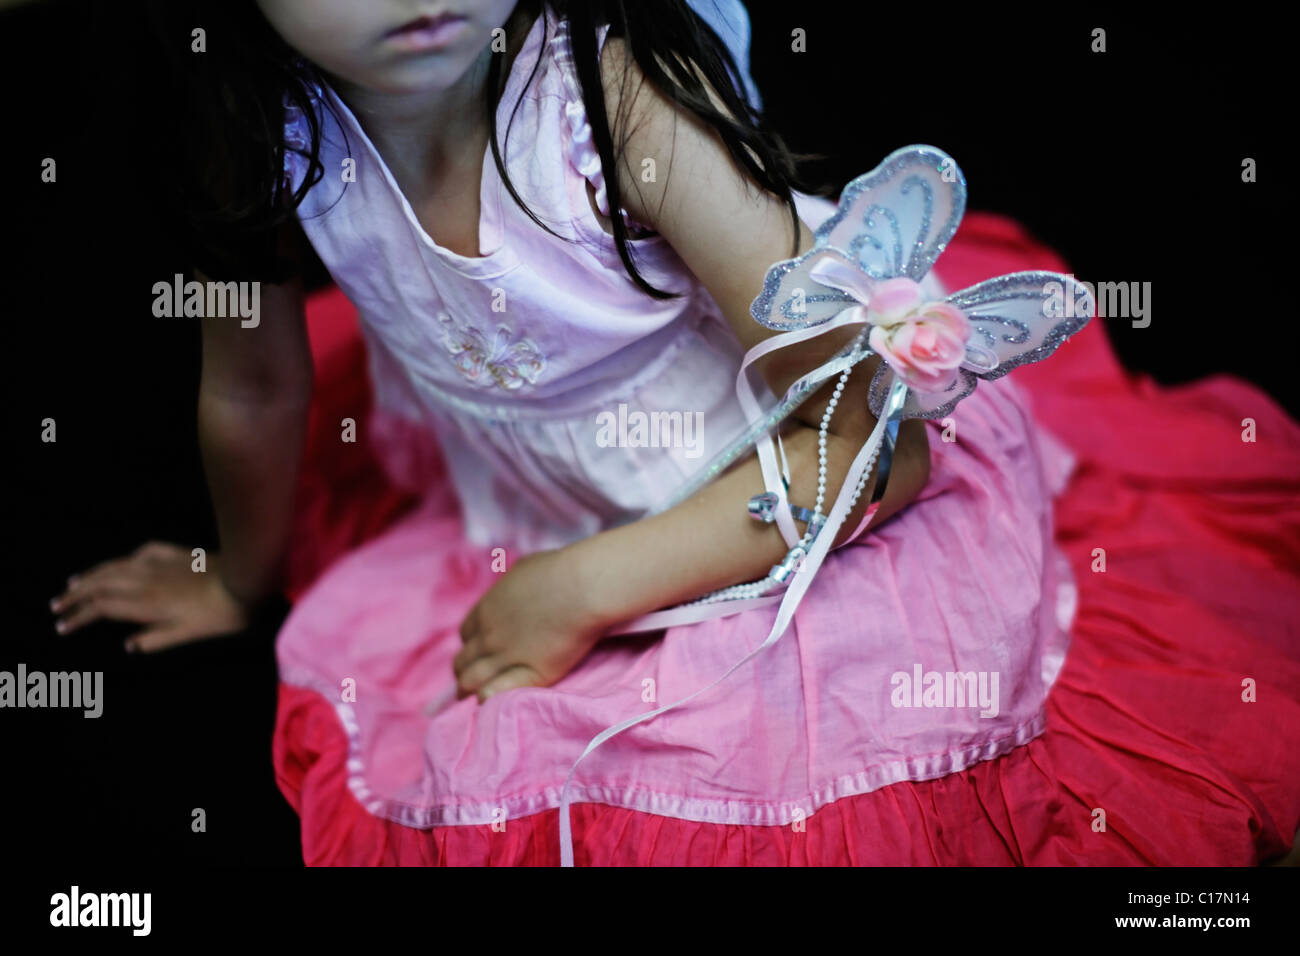 Cinco años de edad, niña de vestido rosado con varita de mariposa y las alas de hadas Foto de stock